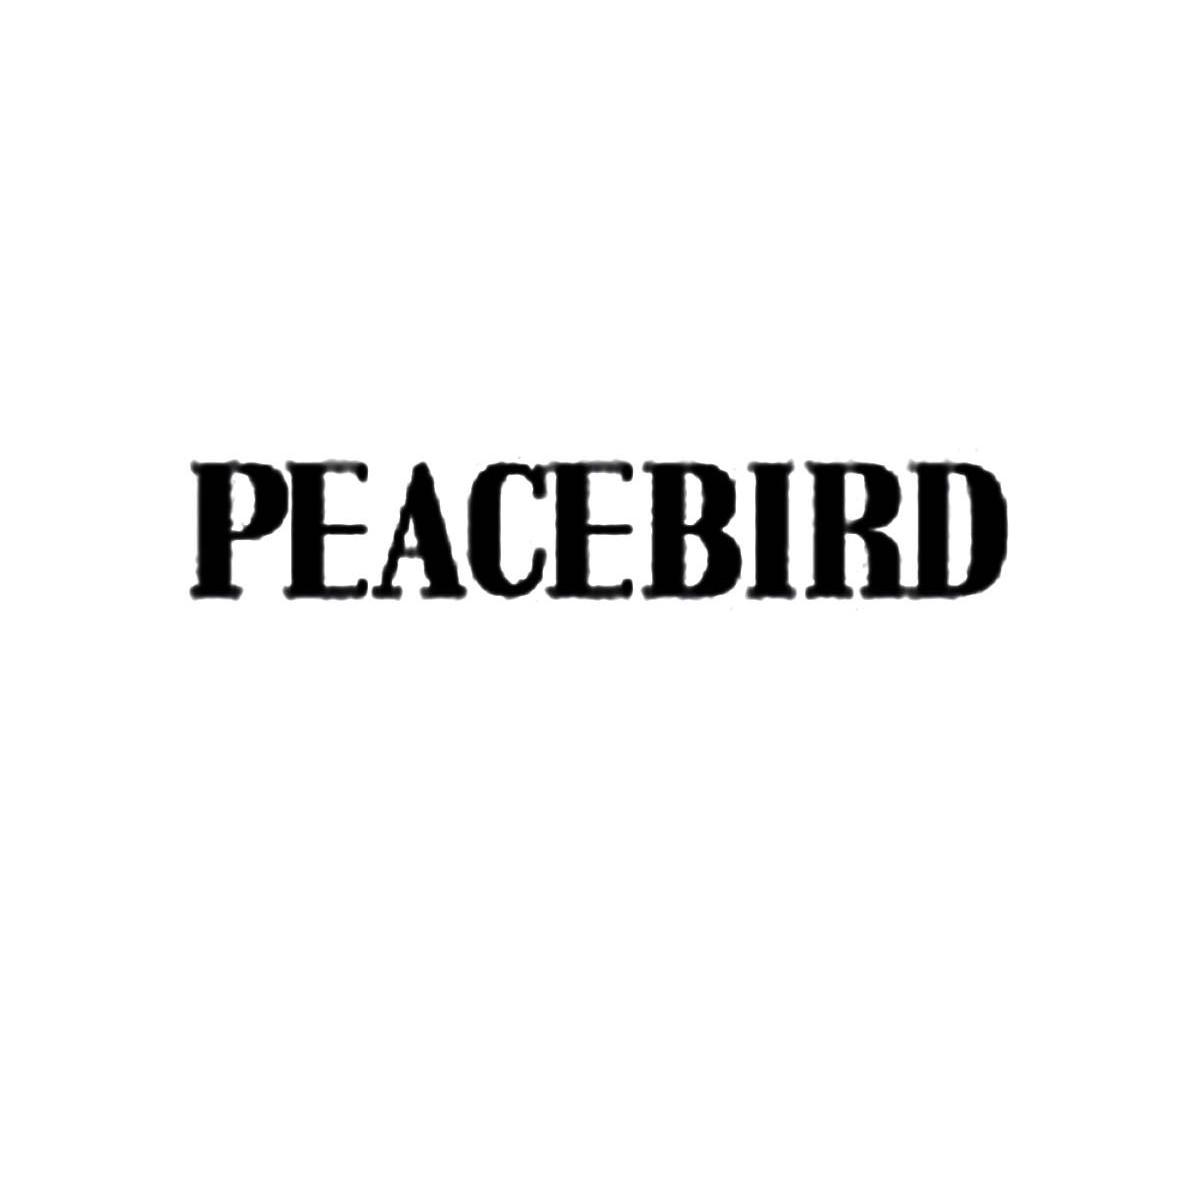 太平鸟标志 logo图片